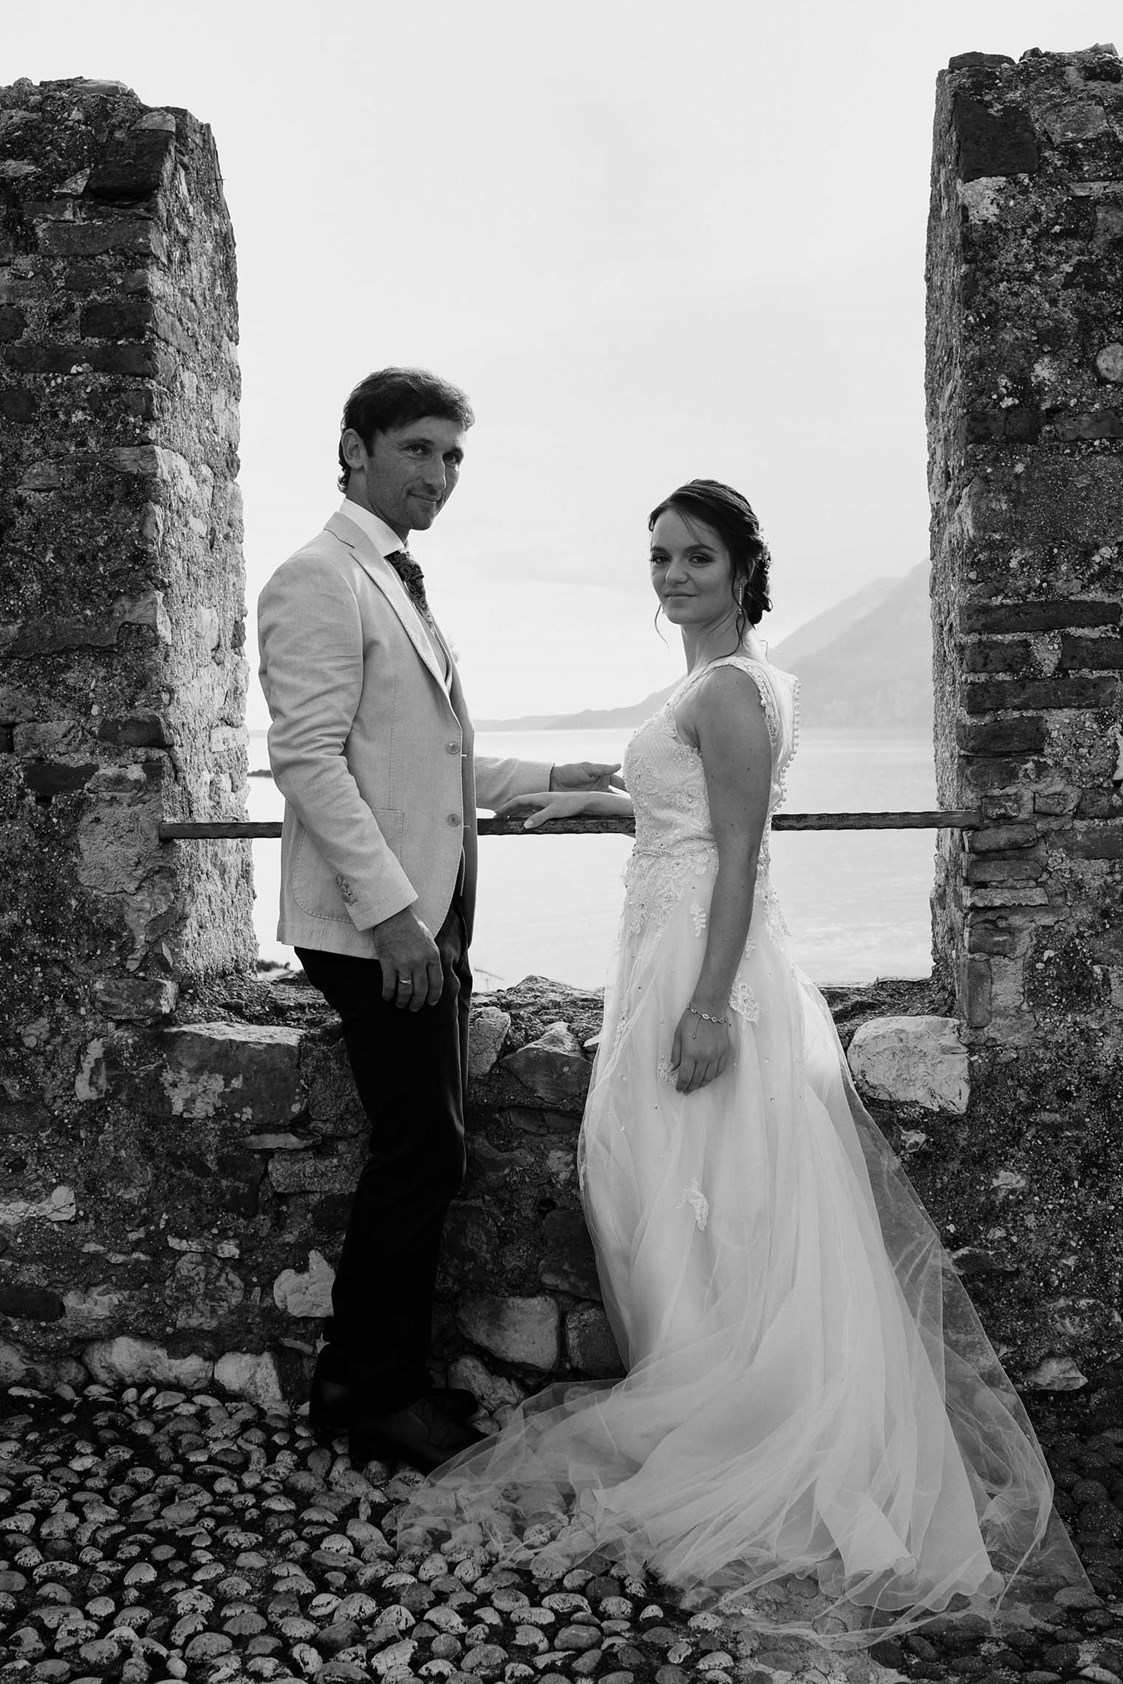 Hochzeitsfotograf: Hochzeitsfotografie Malcesine Gardasee - Michael Jenewein